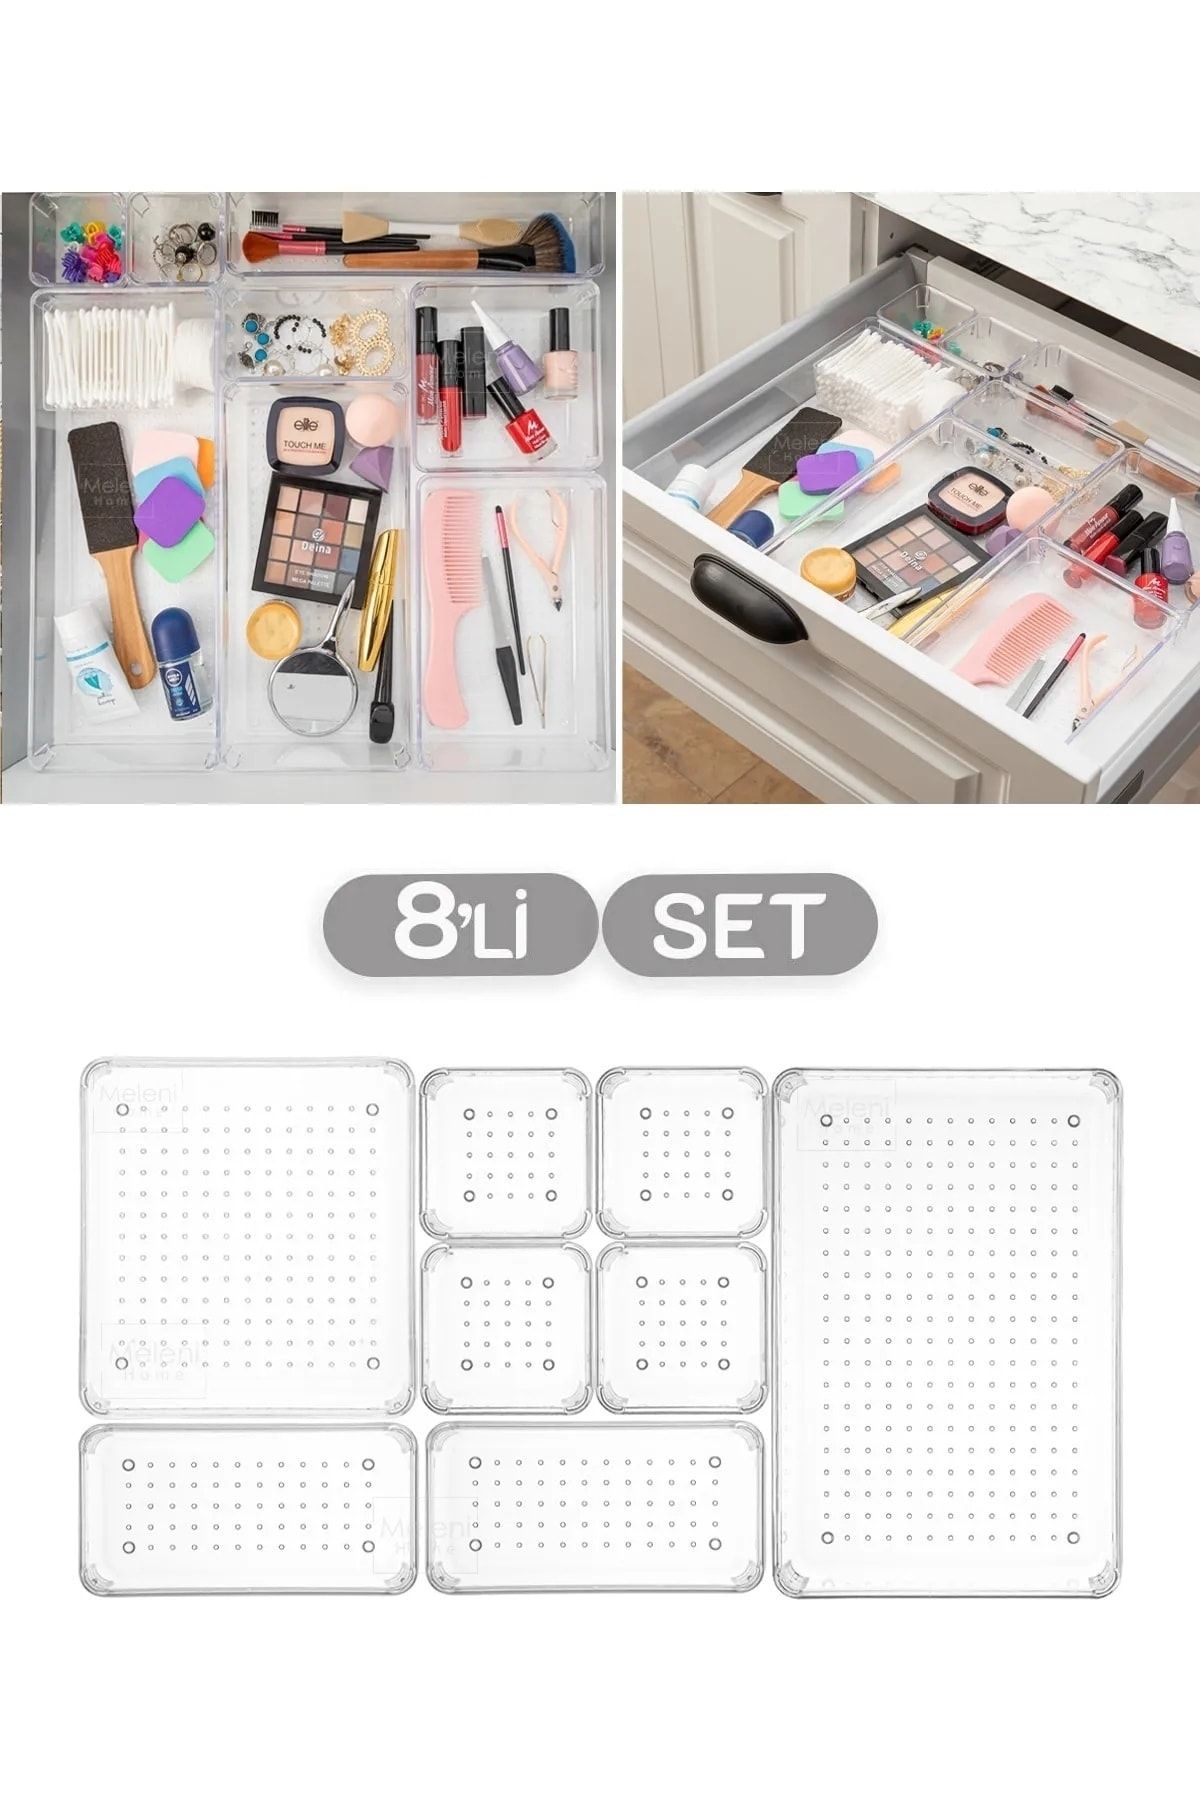 Meleni Home 8'li Set Modüler Çekmece Içi Düzenleyici, Banyo Makyaj Ve Takı Düzenleyici - Ofis Masaüstü Organizer